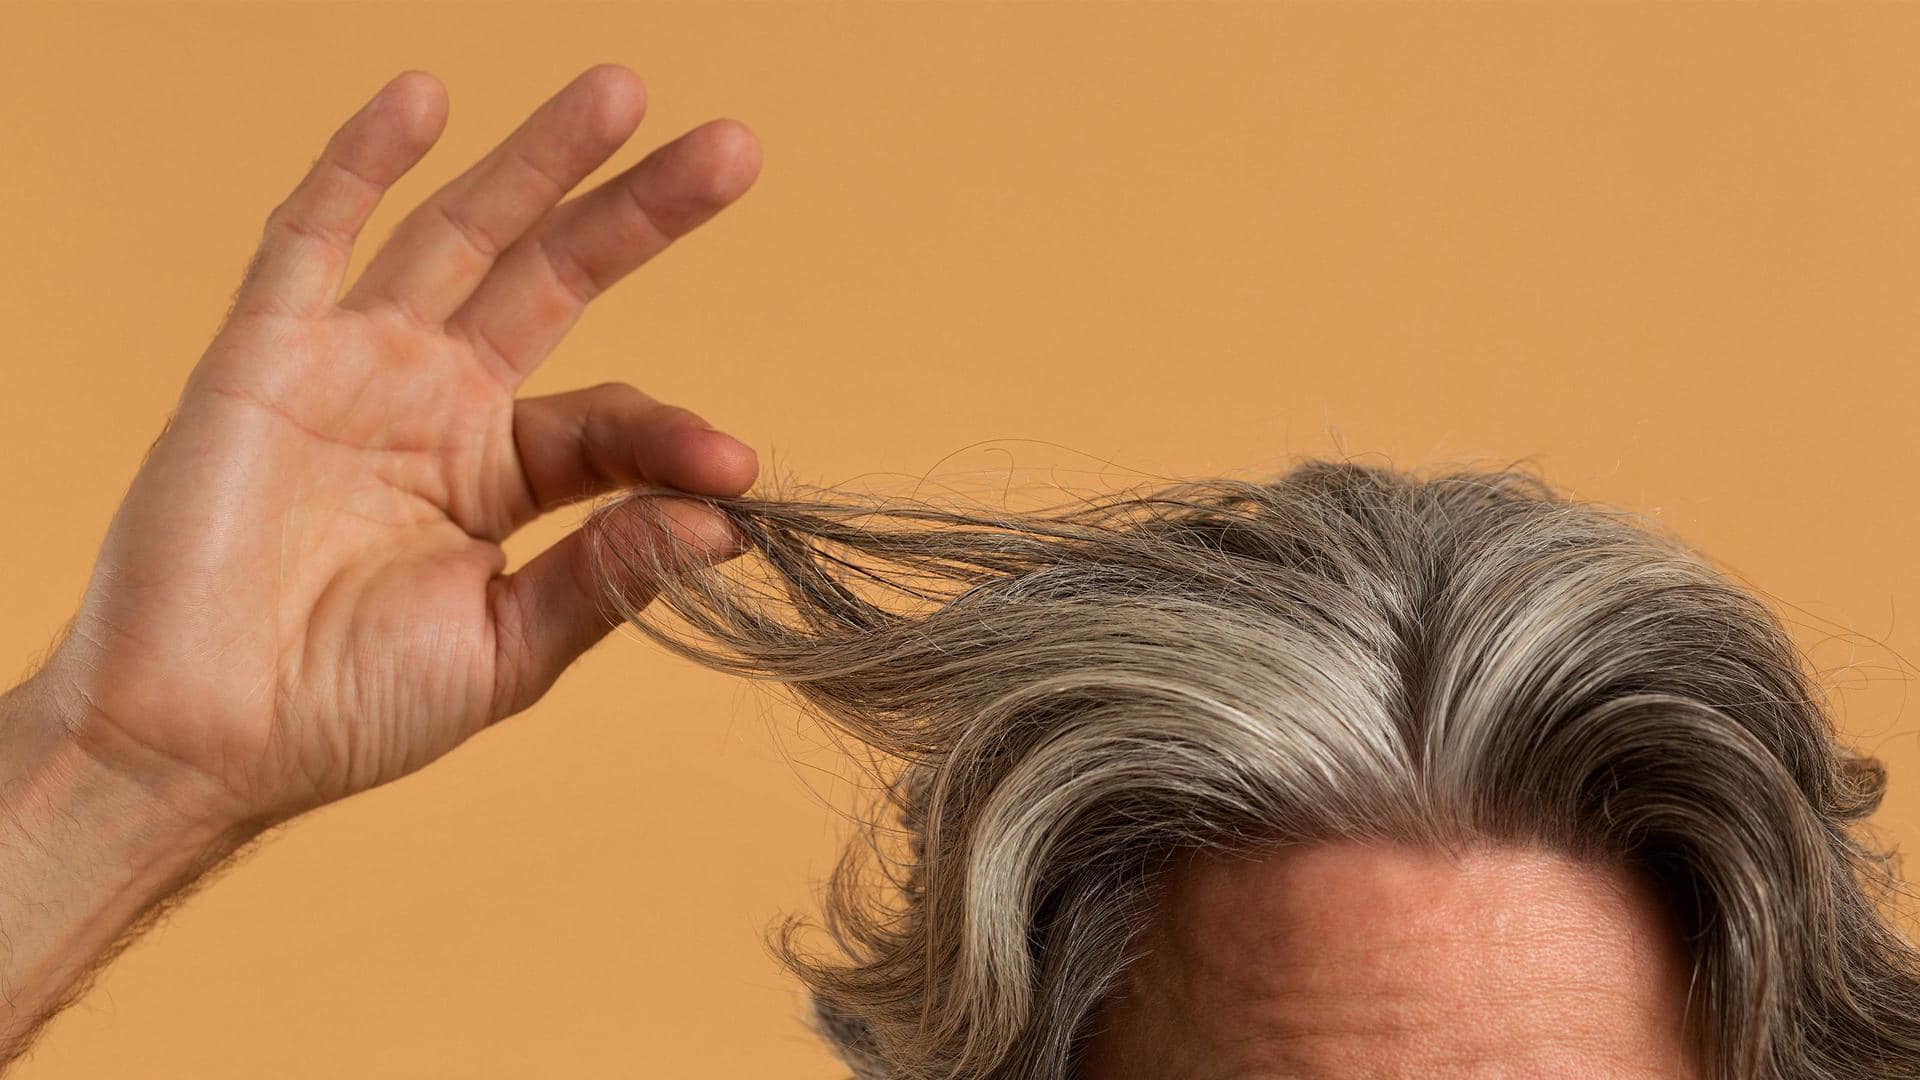 5 natural home remedies to darken gray hair